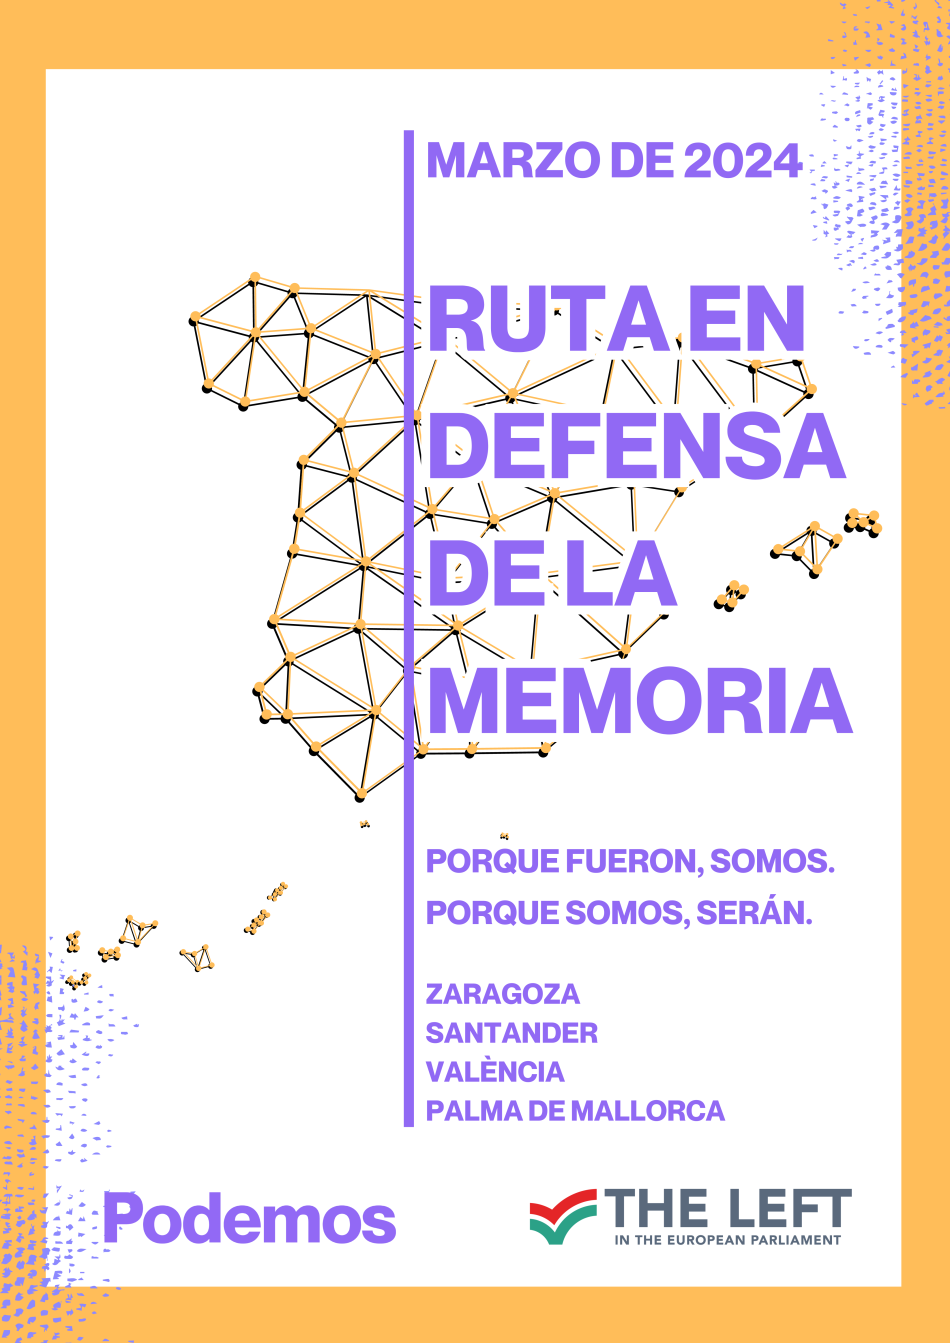 Podemos y asociaciones memorialistas organizan una Ruta en defensa de la memoria democrática ante los ataques de los gobiernos de PP y Vox